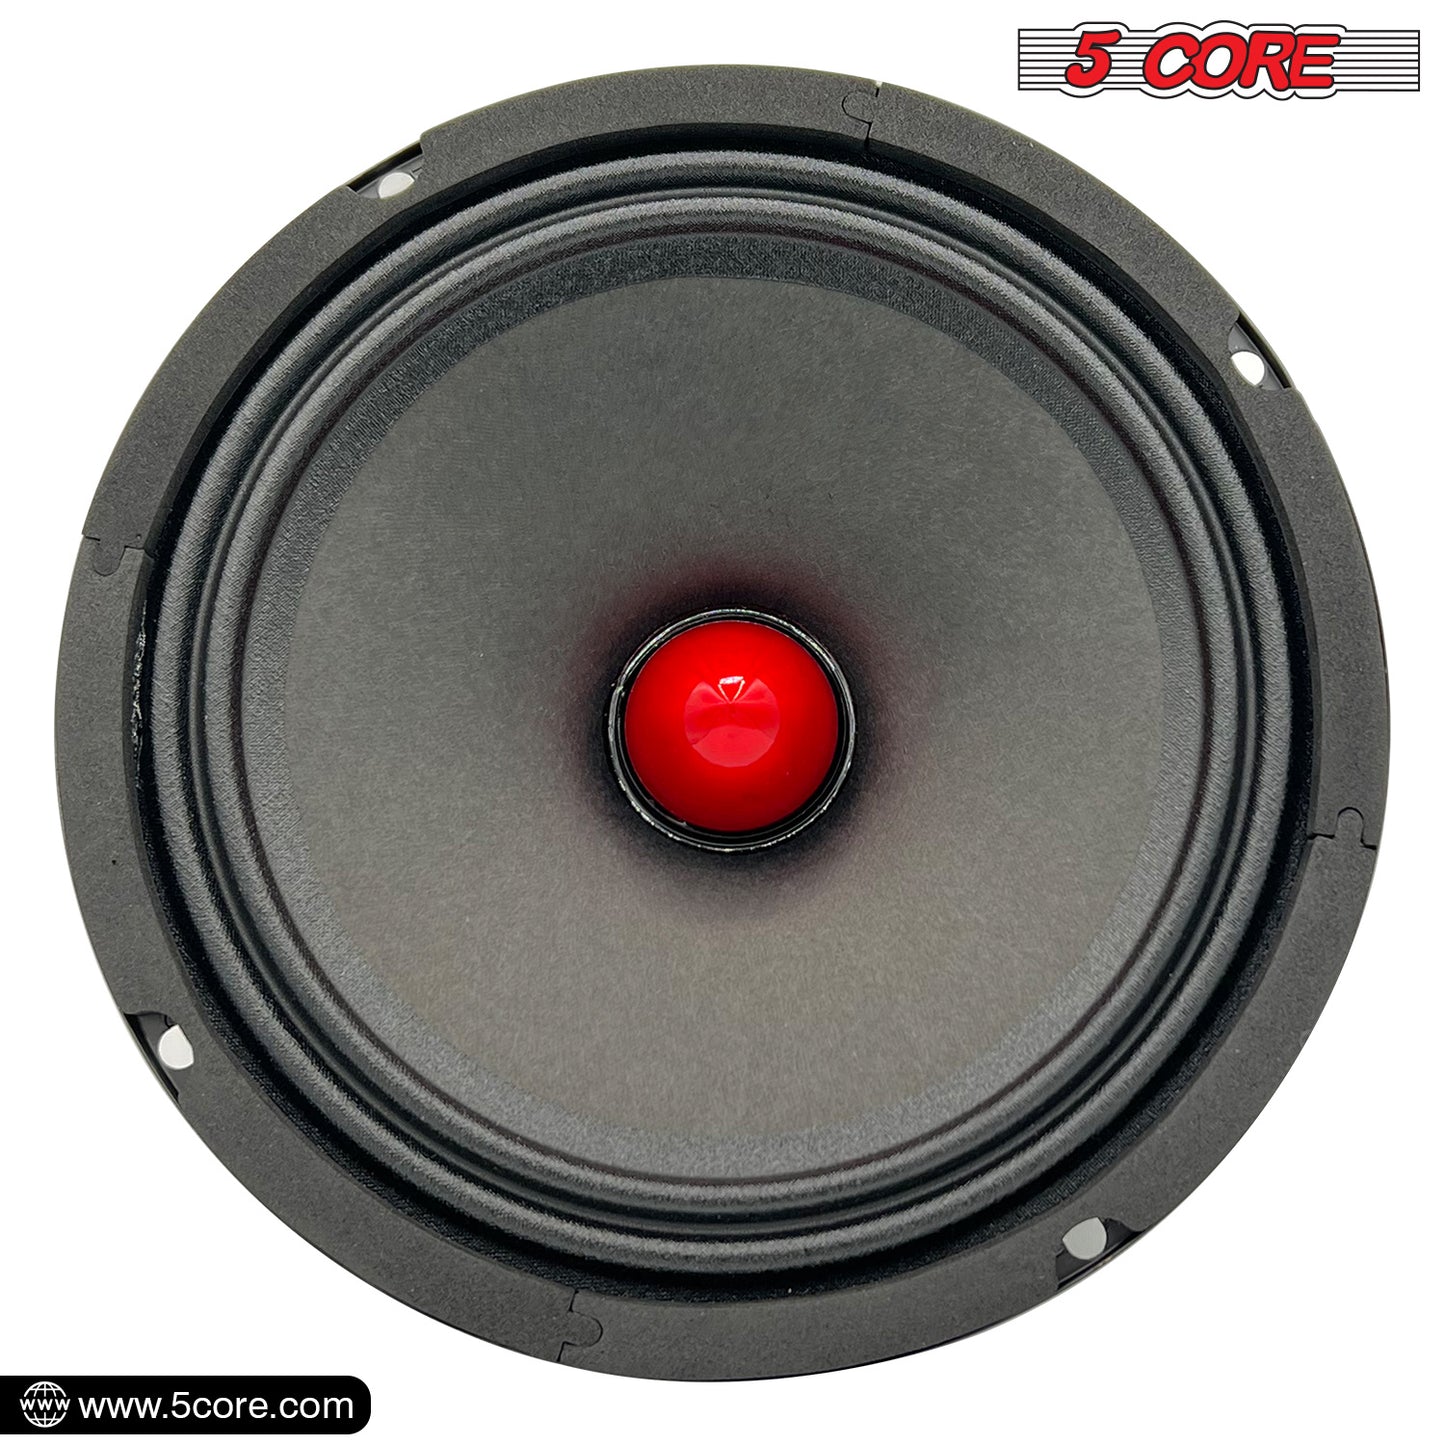 5 Core 6.5 Car Audio Speakers